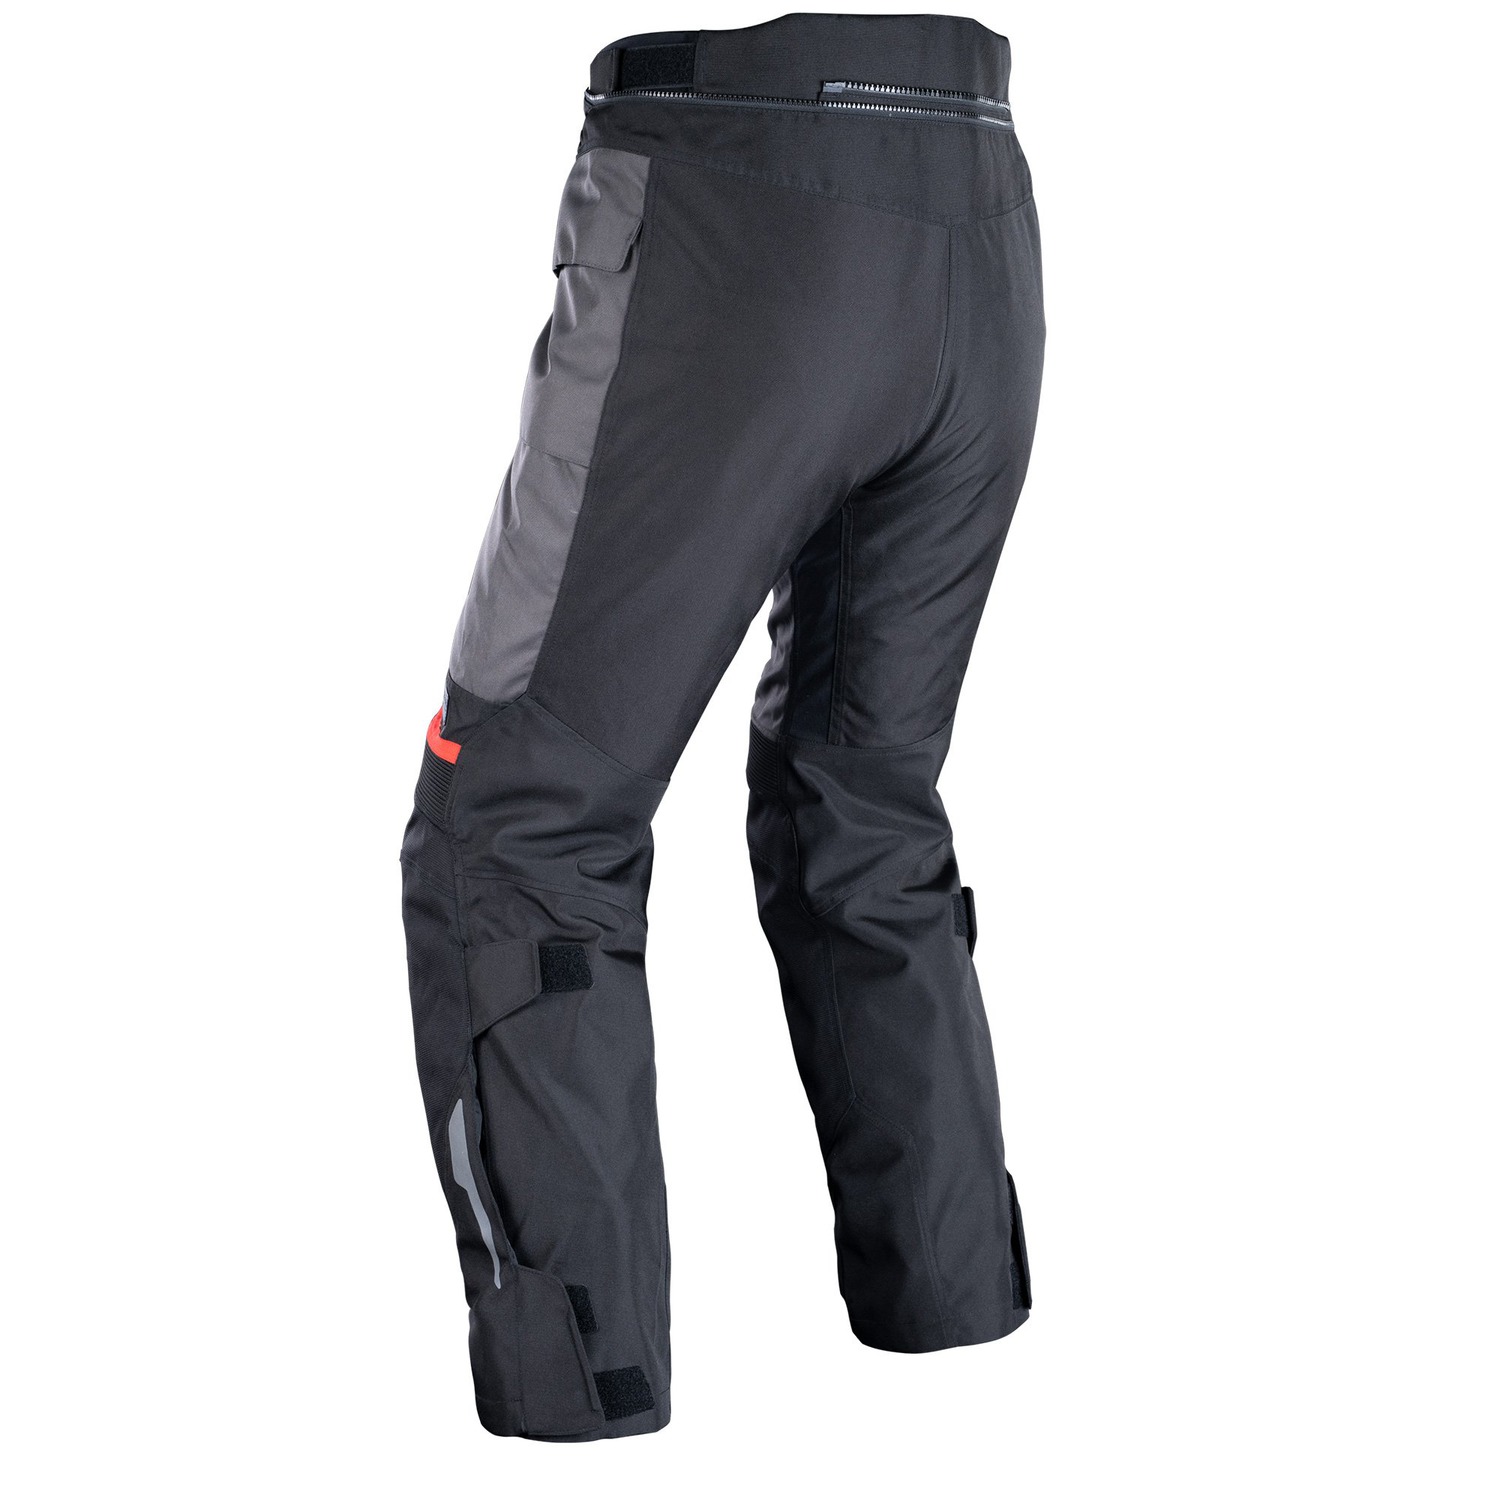 Obrázek produktu kalhoty ROCKLAND DRY2DRY™, OXFORD ADVANCED (šedé/černé/červené)